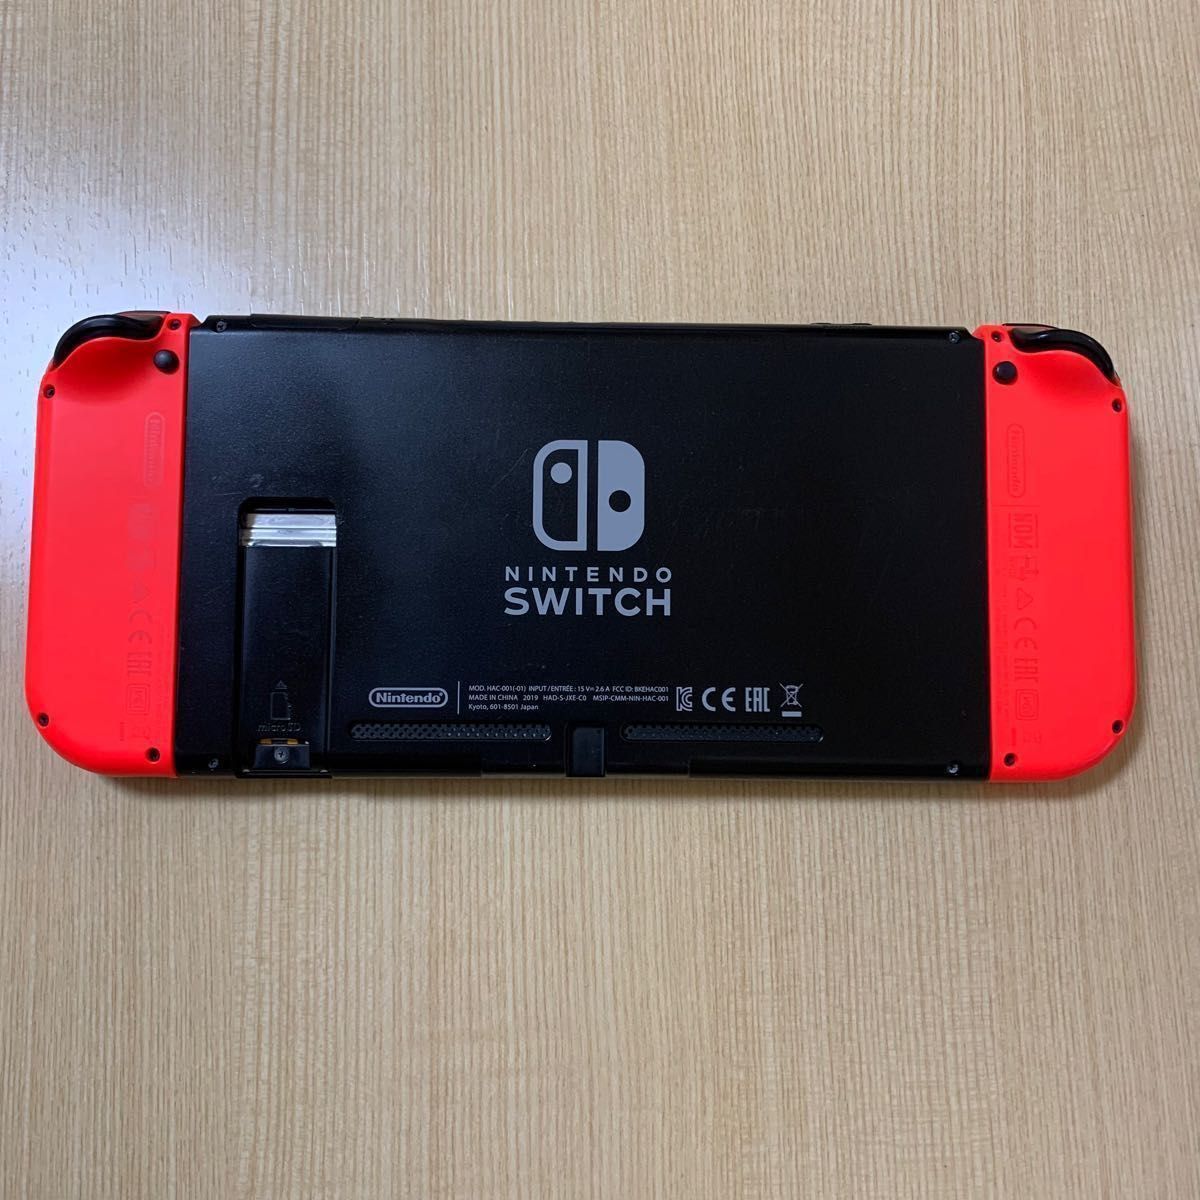 【最安値】新型 ニンテンドースイッチ バッテリー強化版 Nintendo Switch 任天堂 本体